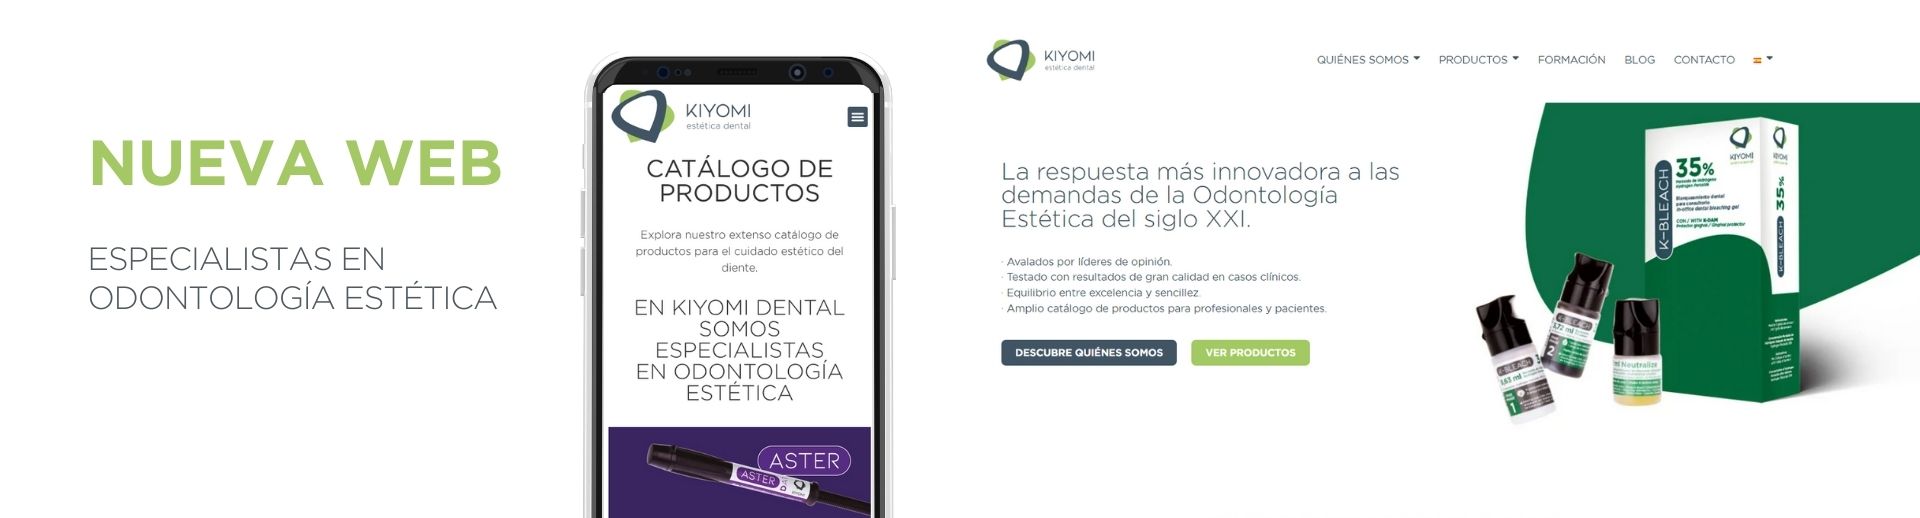 Kiyomi Dental presenta su nueva página web, ofreciendo innovación y calidad en Odontología Estética y Restauradora